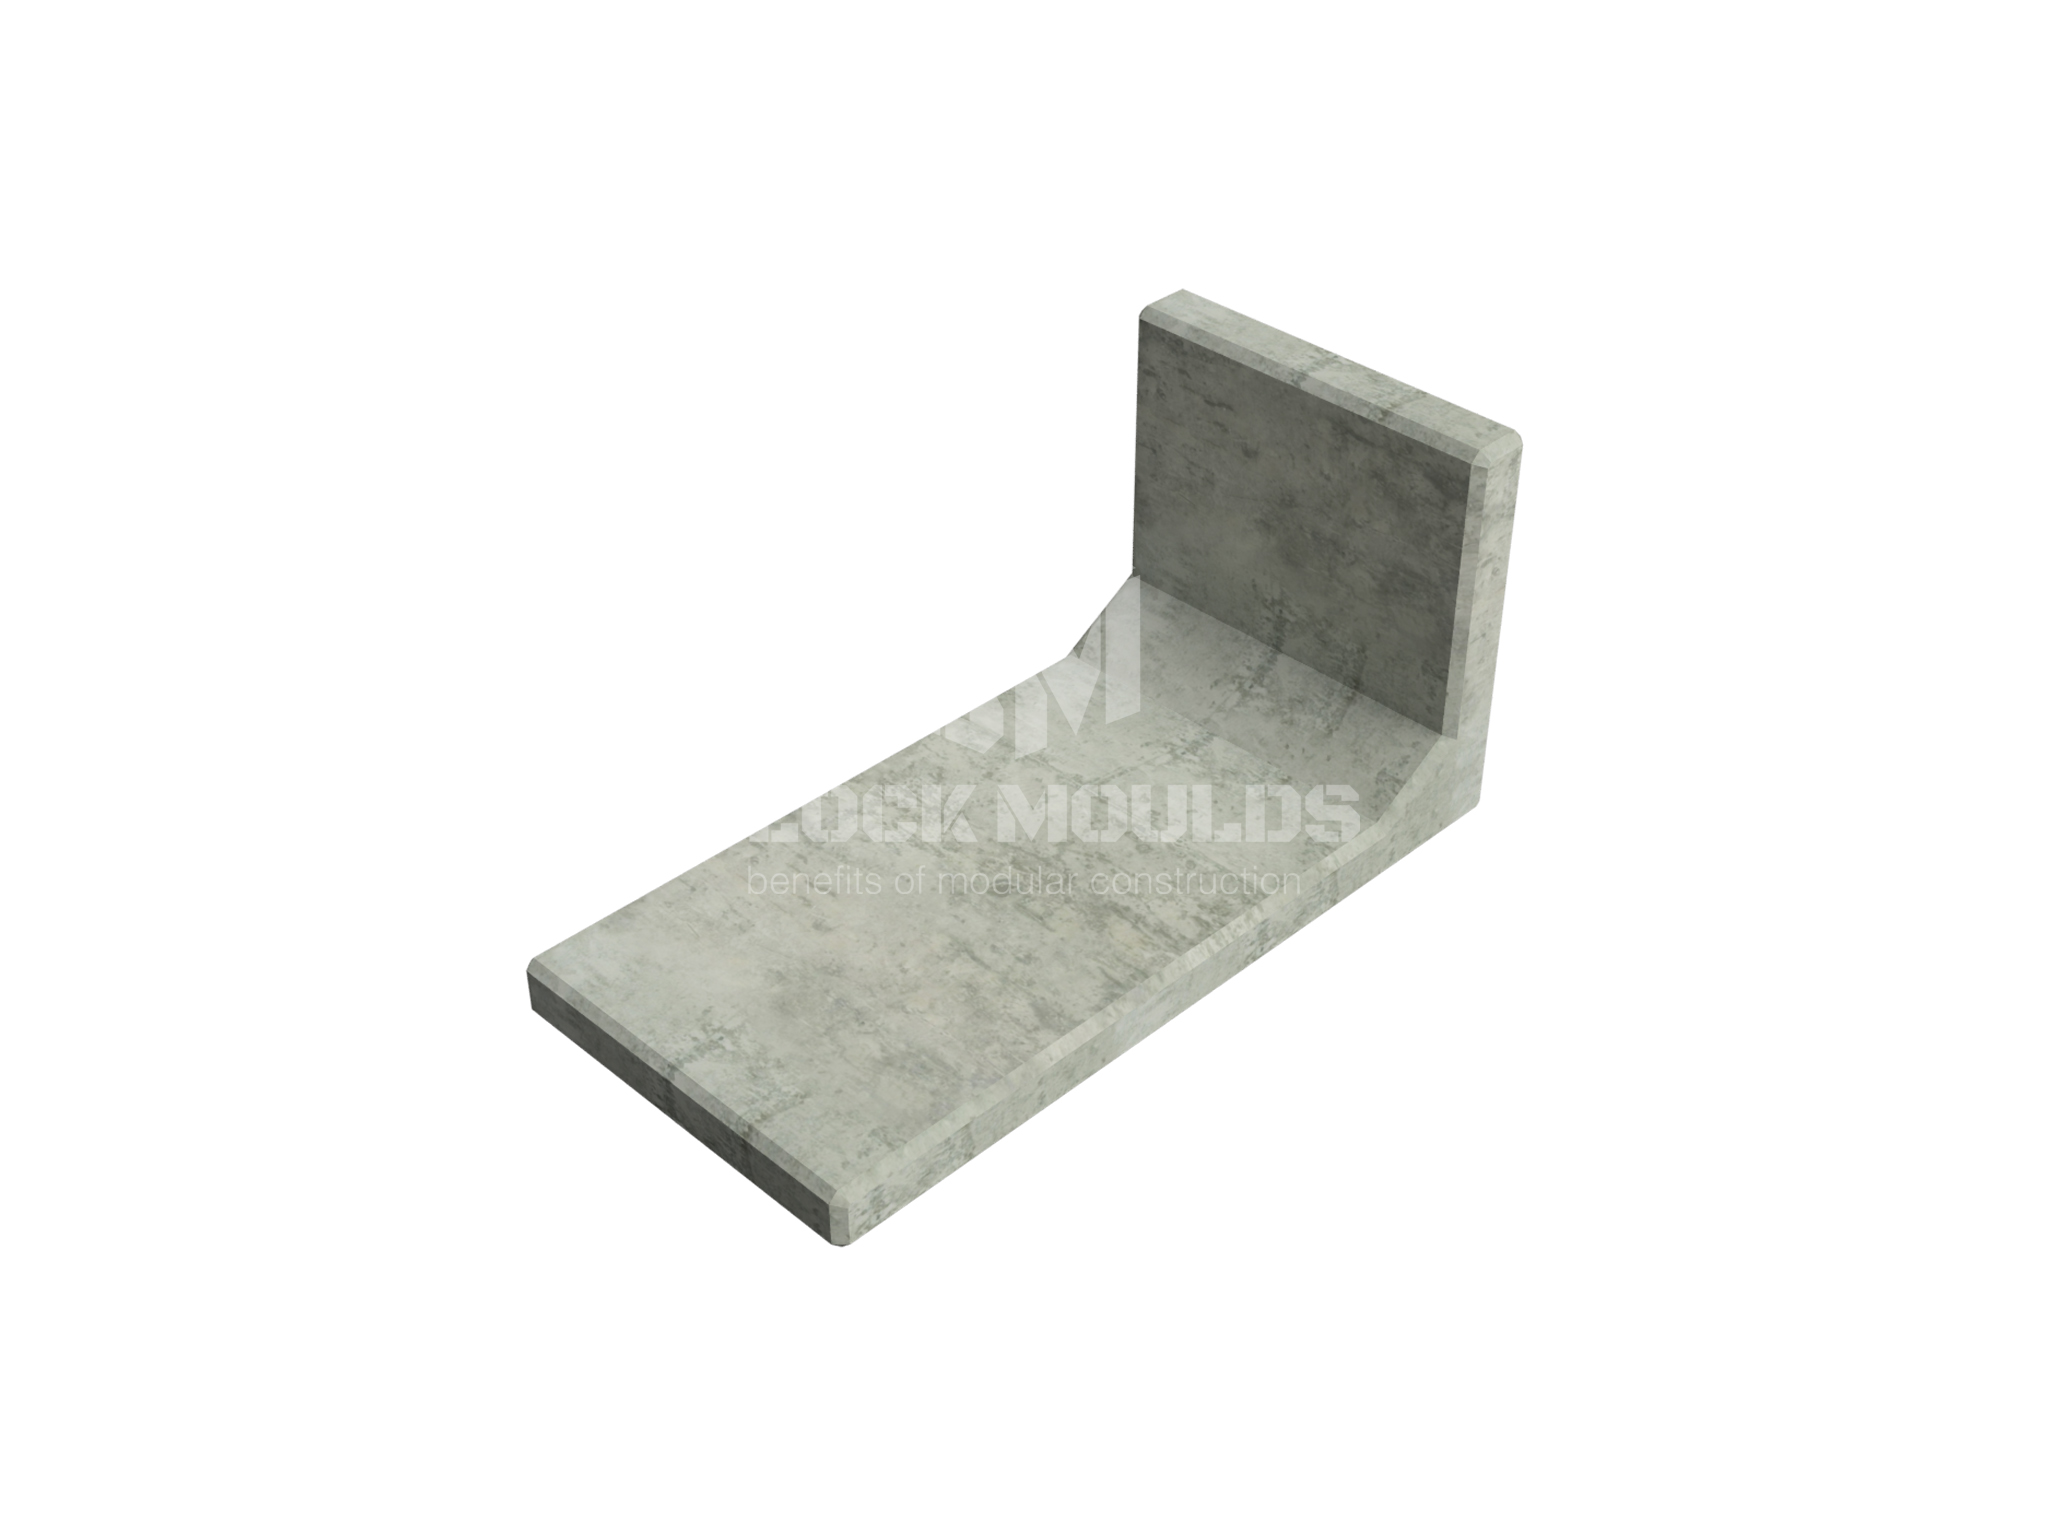 L shape concrete block